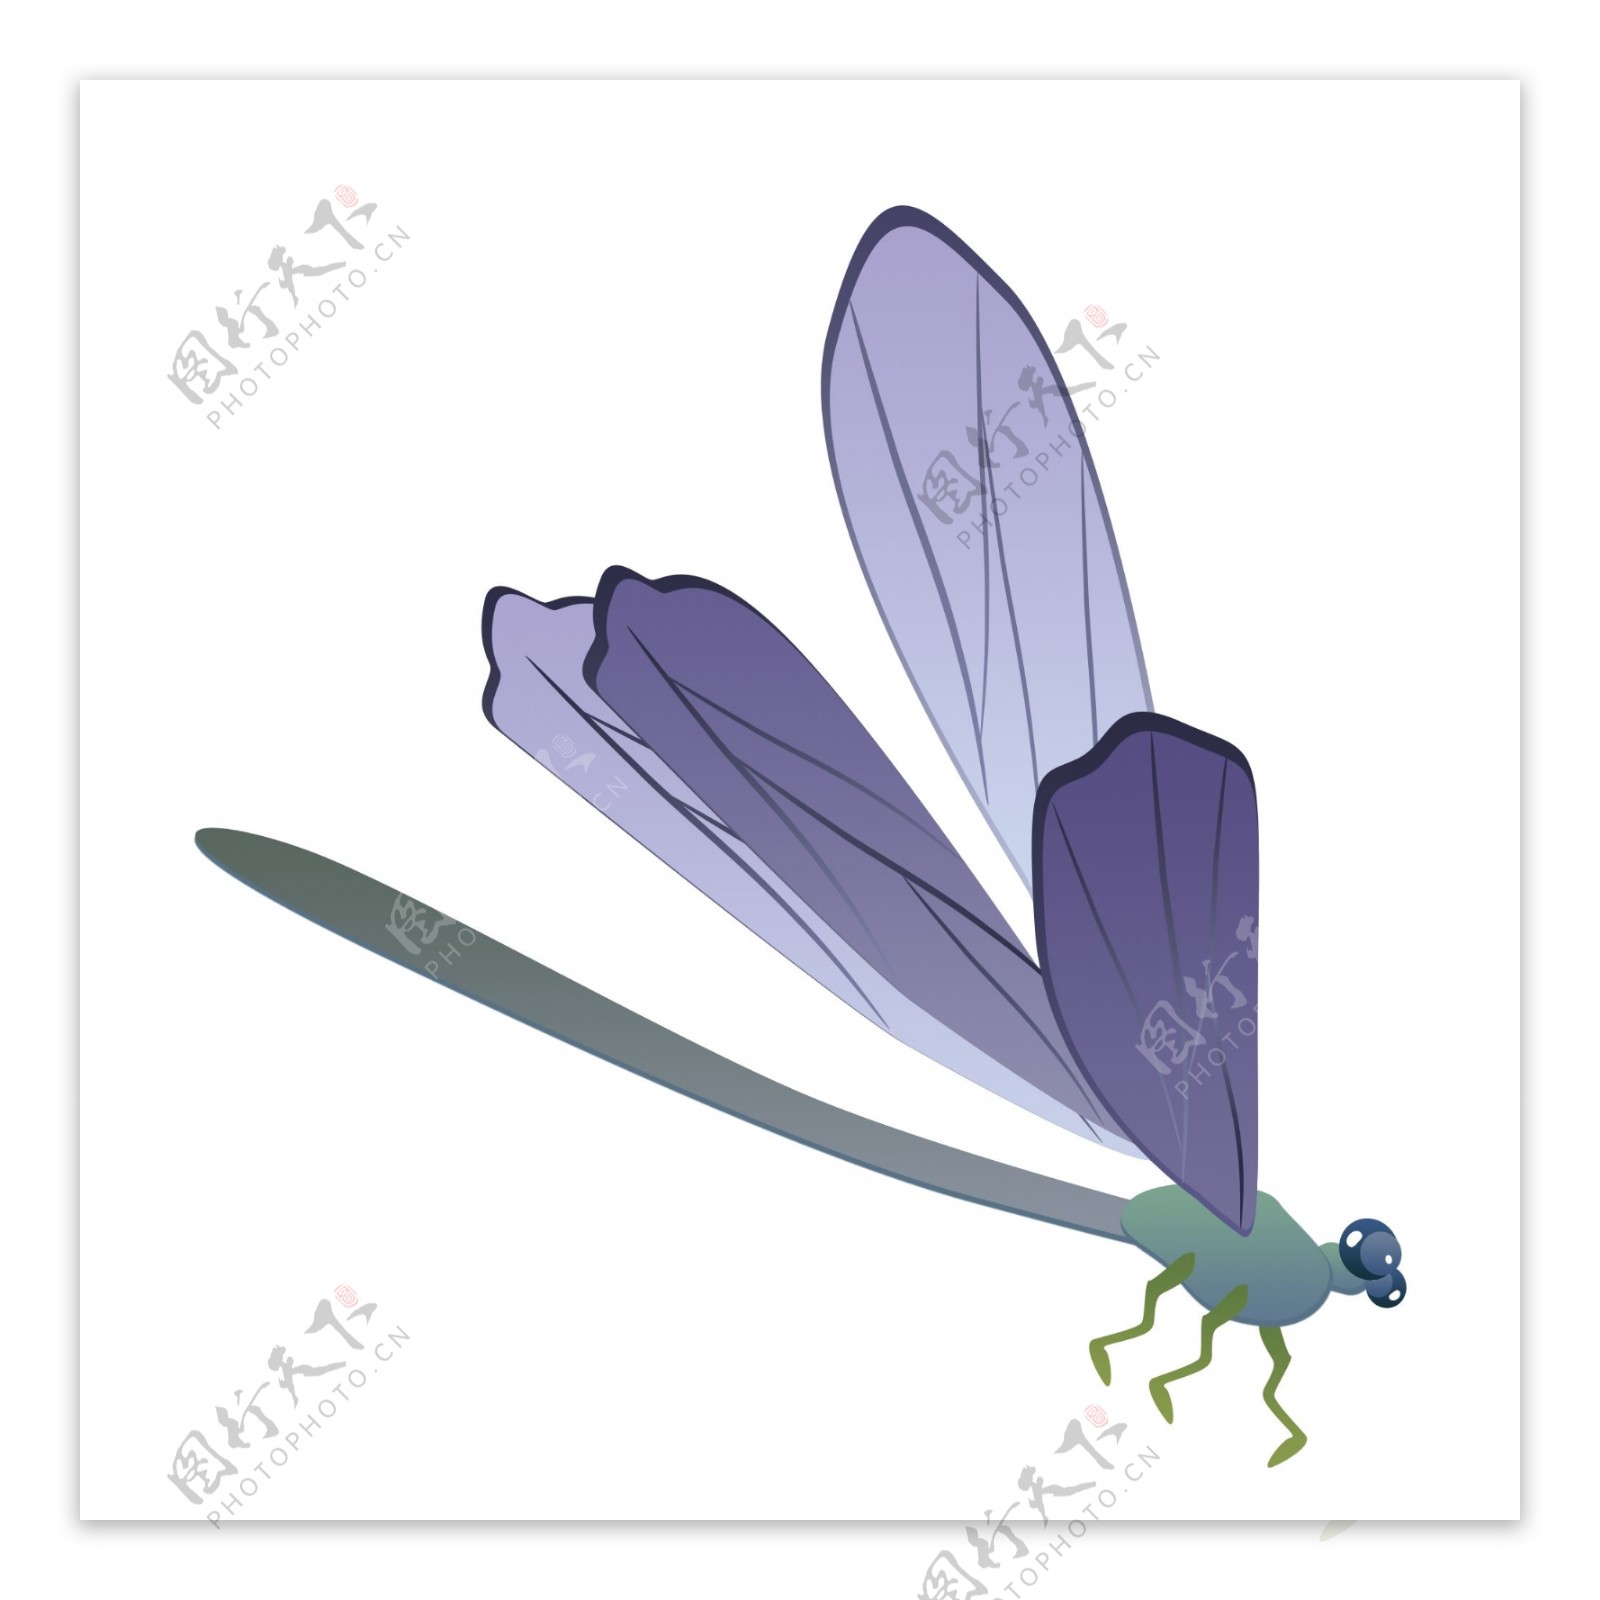 昆蟲 蜻蜓 翅膀 藍色卡通蜻蜓插畫, 蜻蜓剪貼畫, 昆蟲, 蜻蜓飛蟲素材圖案，PSD和PNG圖片免費下載